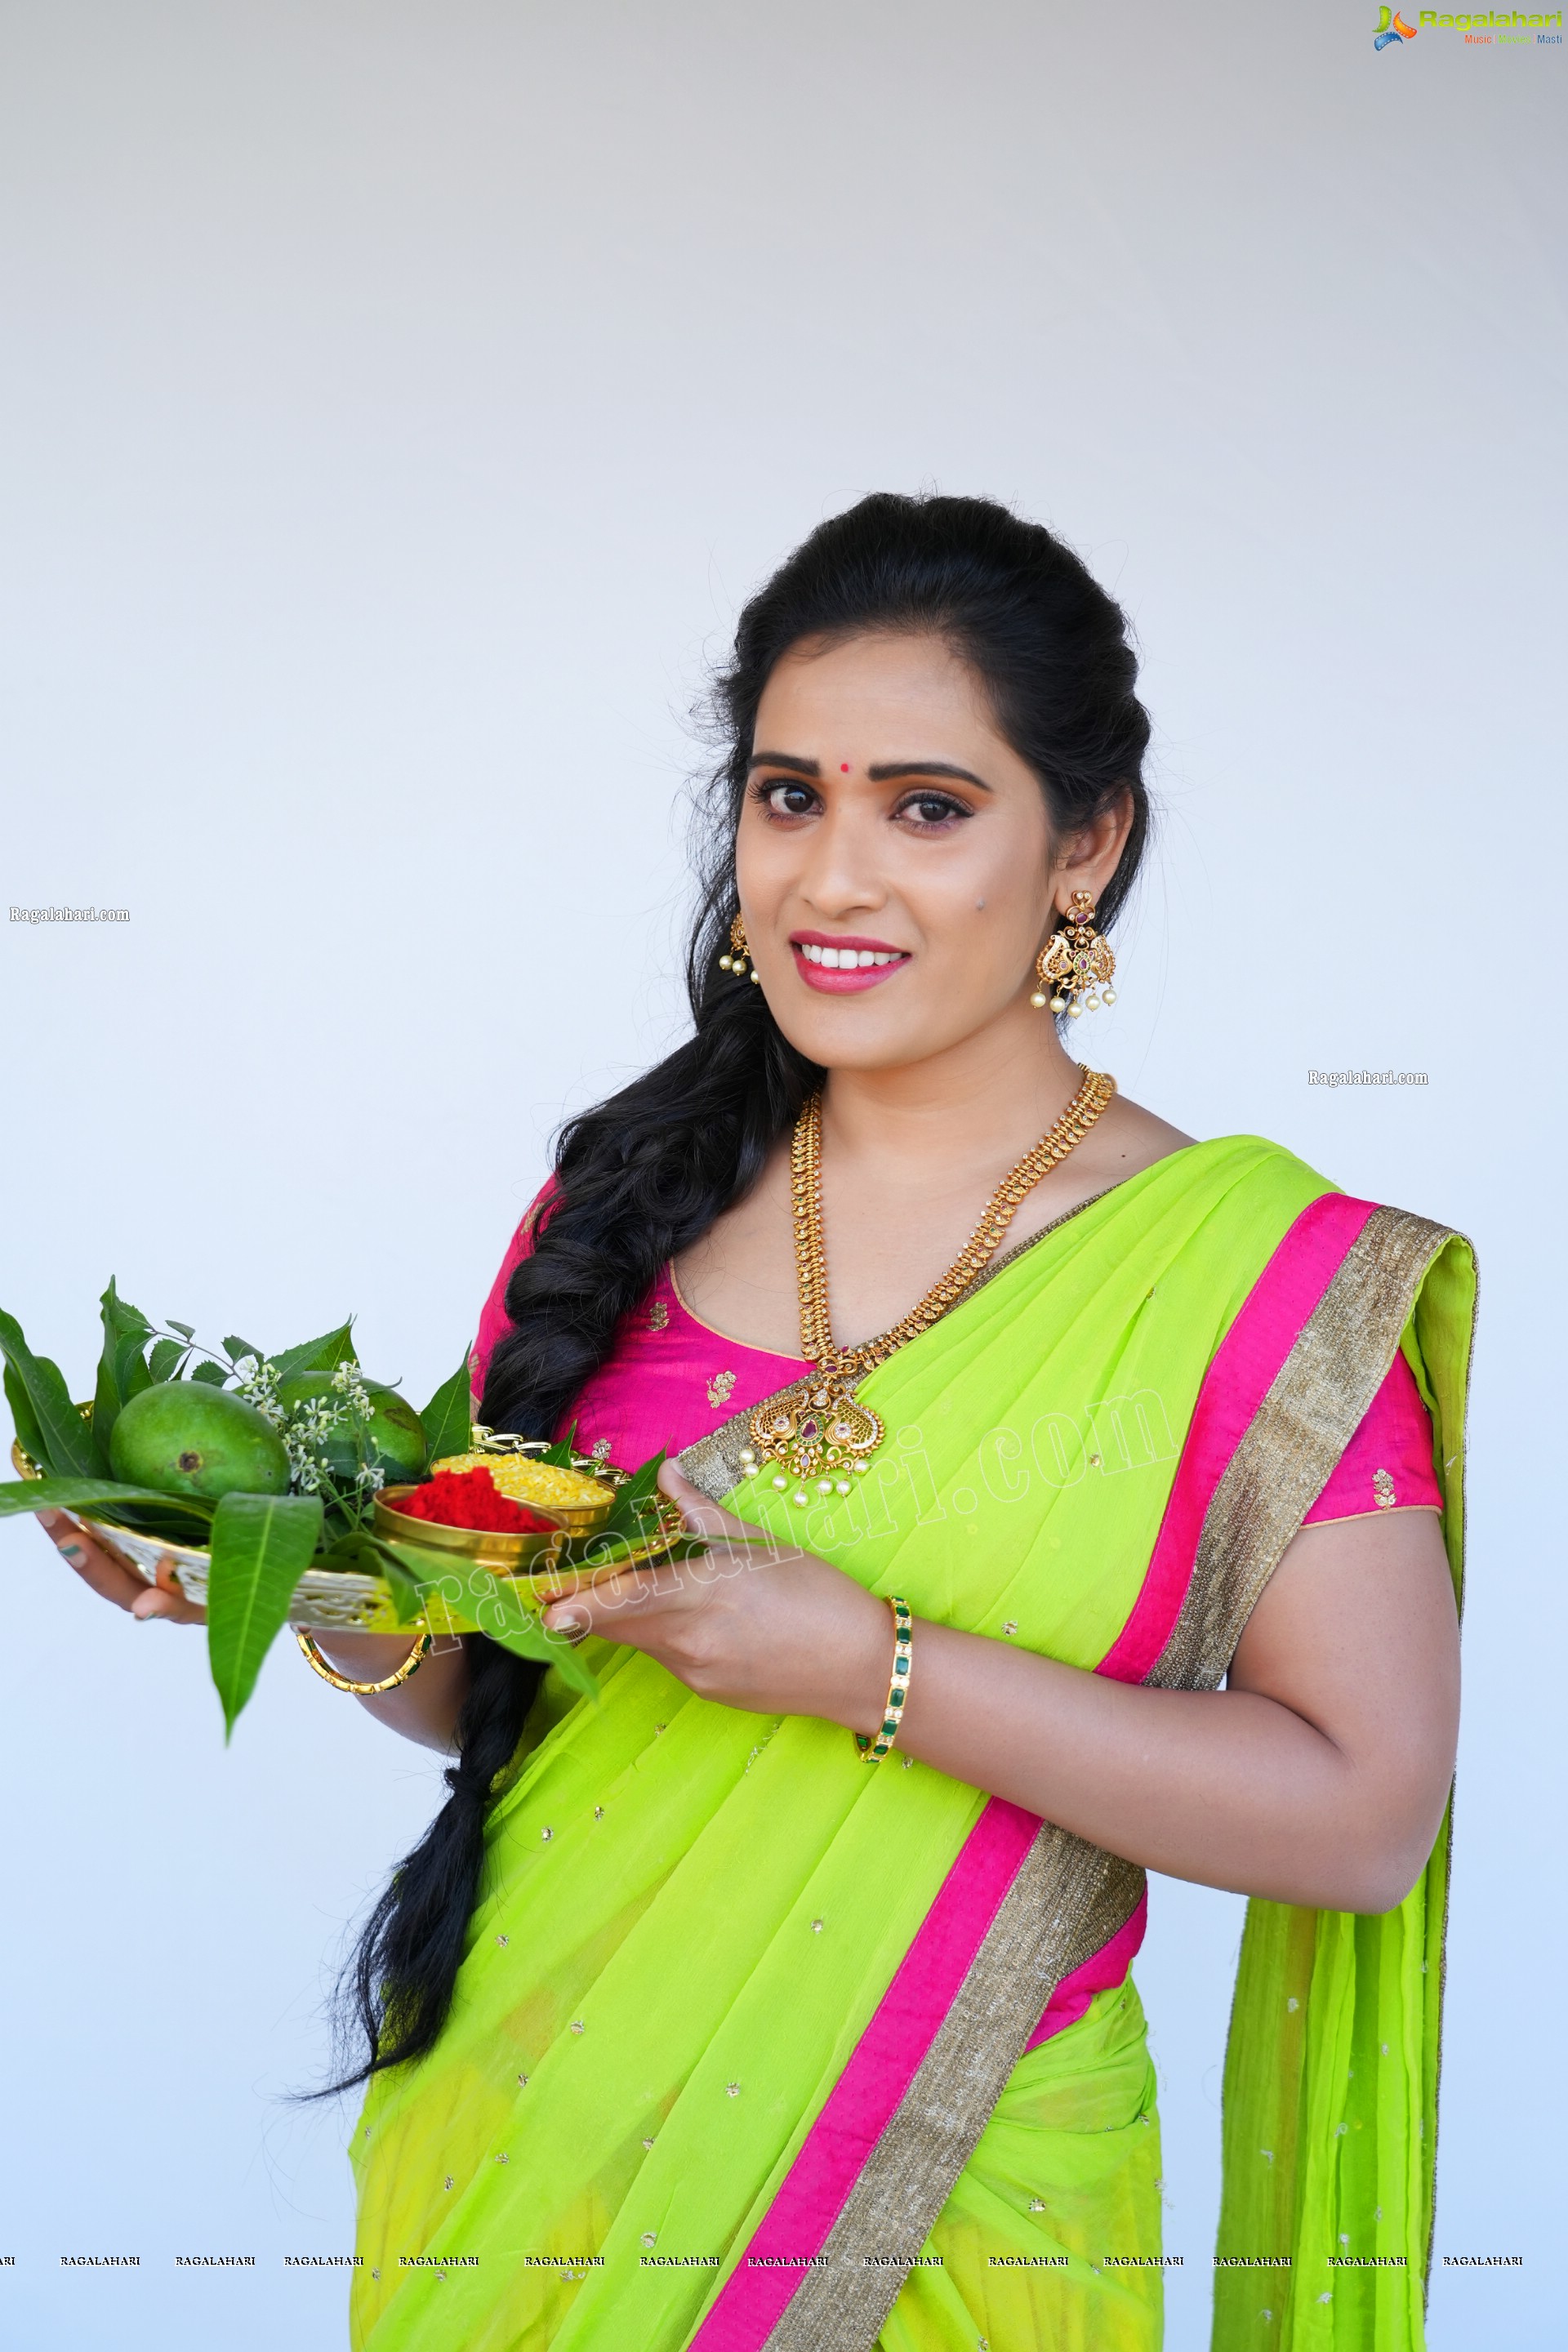 Anusha Parada Ragalahari Exclusive Ugadi Photo Shoot